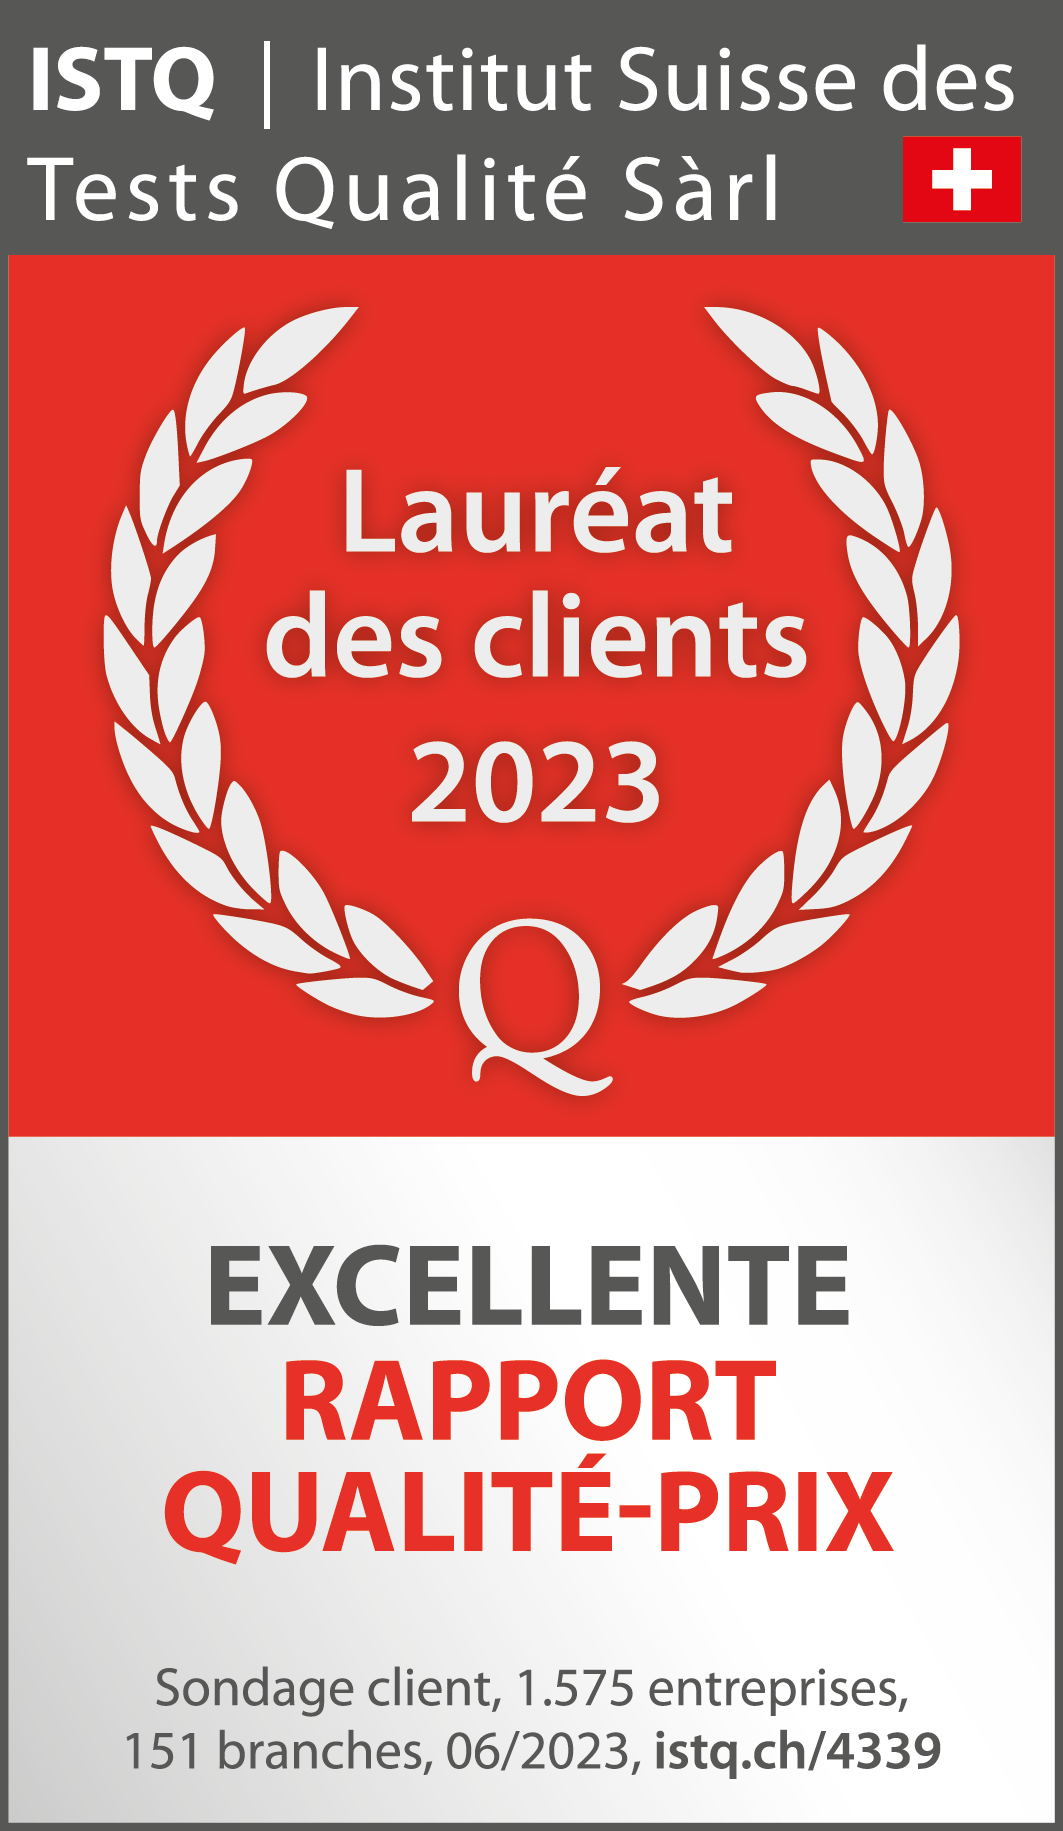 Selon l'Institut Suisse de Test Qualité Sàrl, ALDI-now a un excellent rapport qualité-prix et est le lauréat des clients 2022